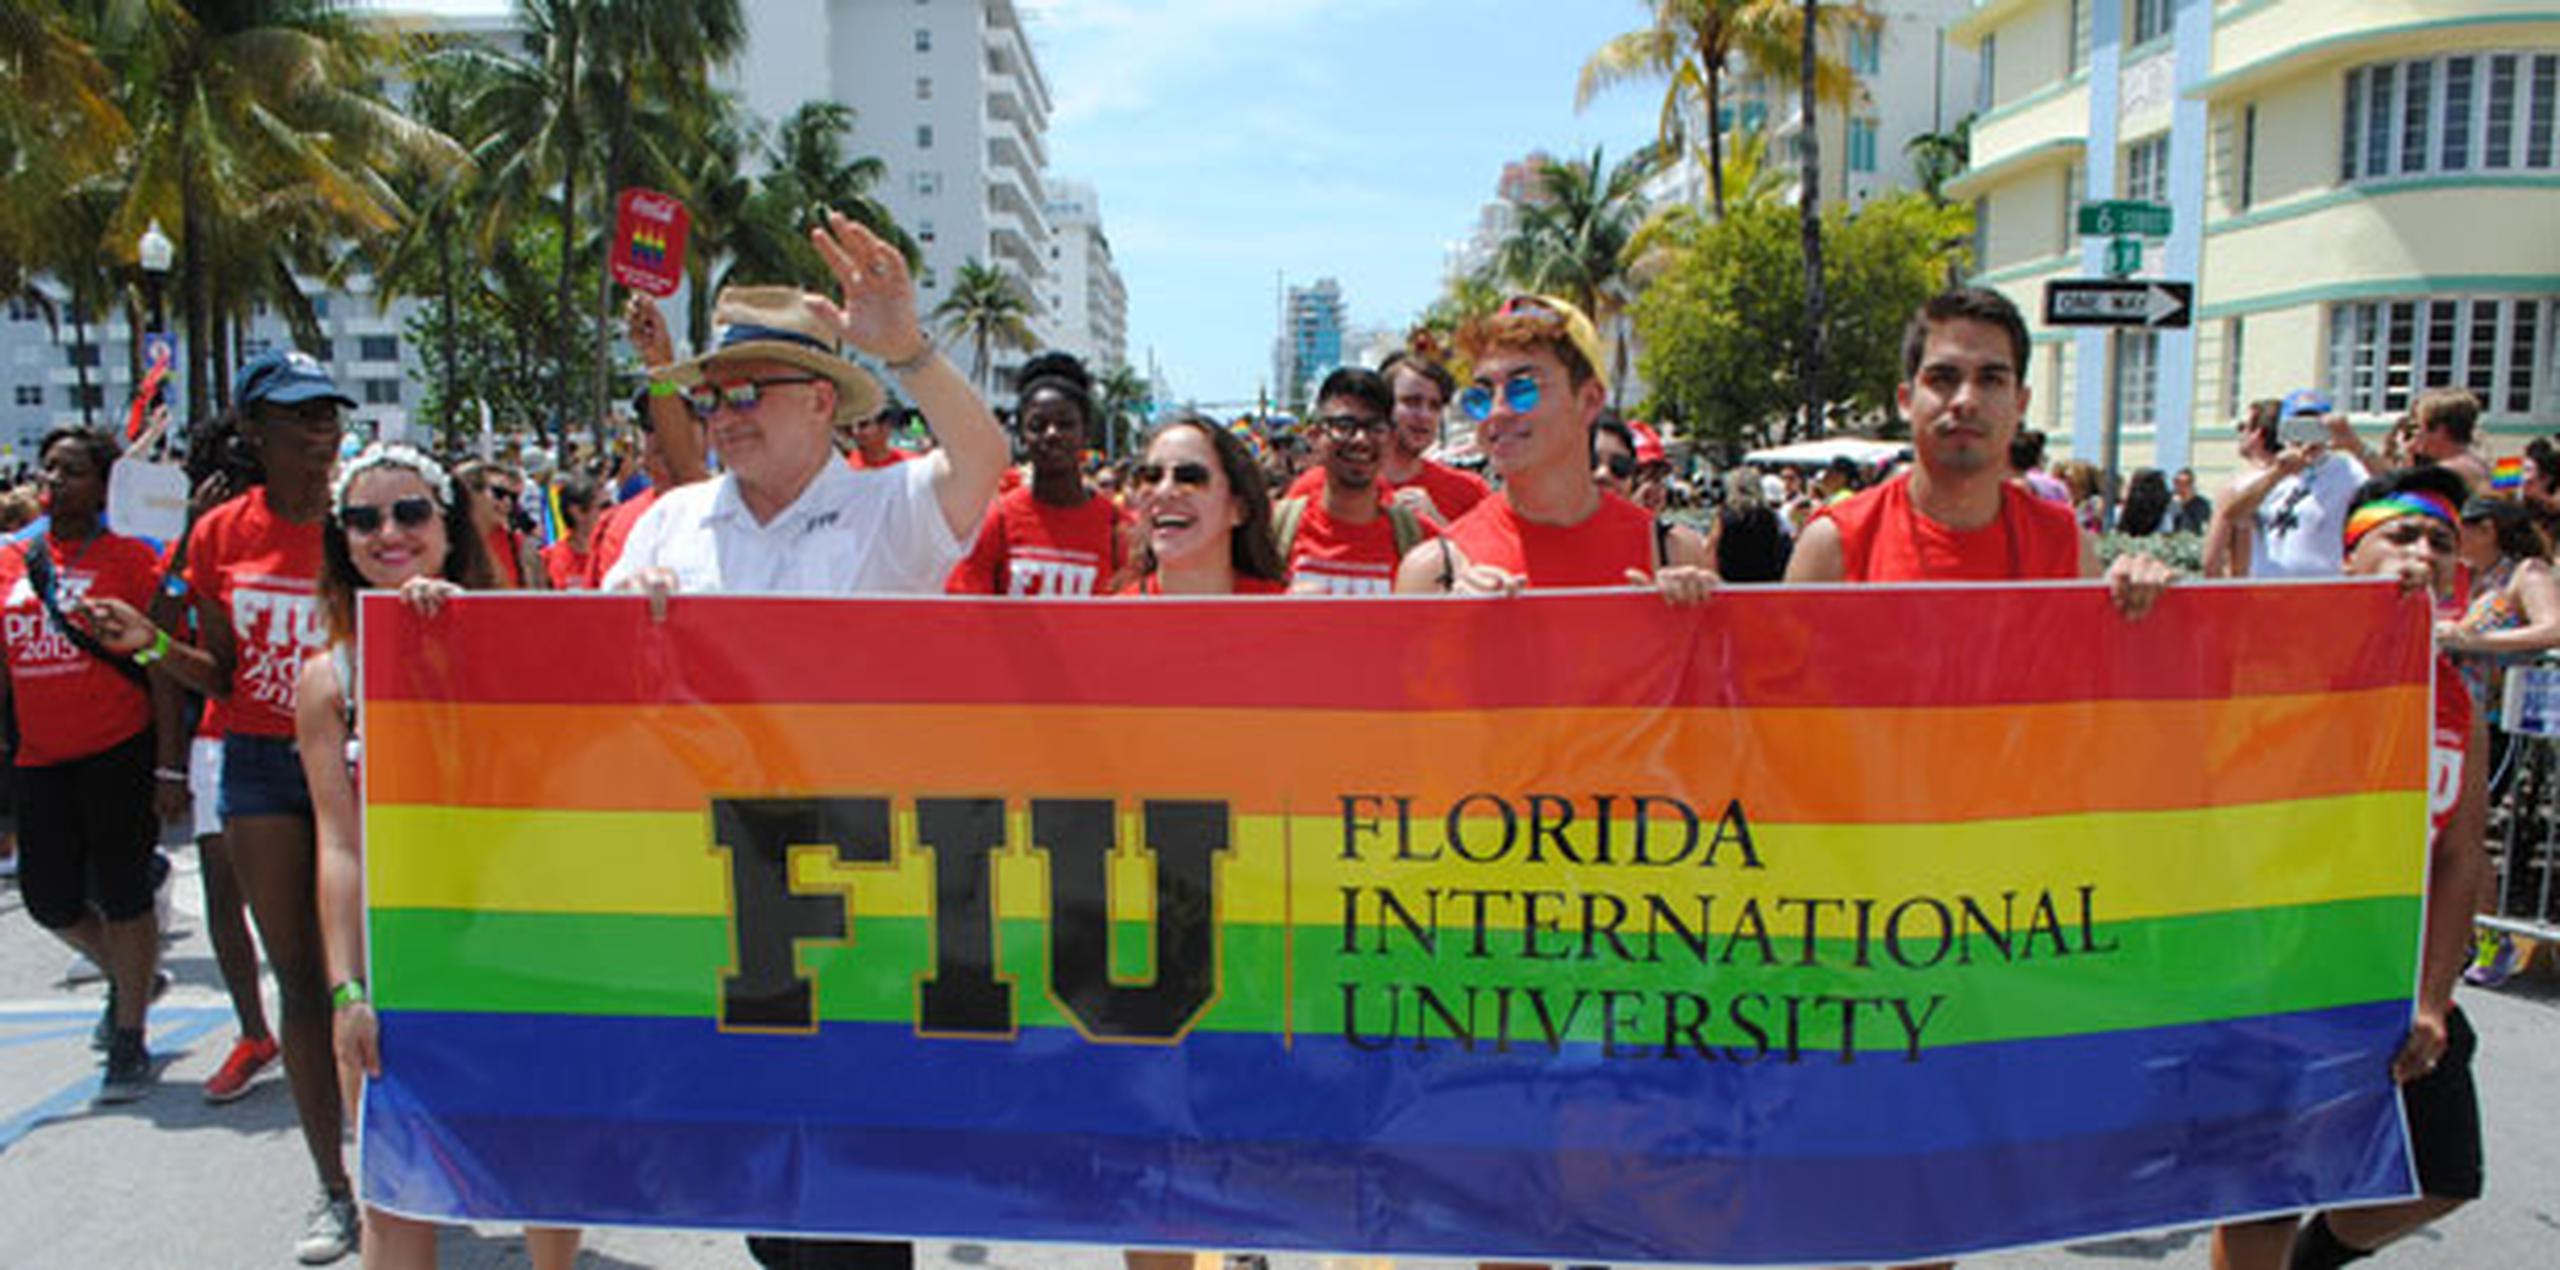 Los actos englobados en el "Miami Beach Gay Pride" comenzaron desde el pasado viernes y han continuado el fin de semana. (EFE)